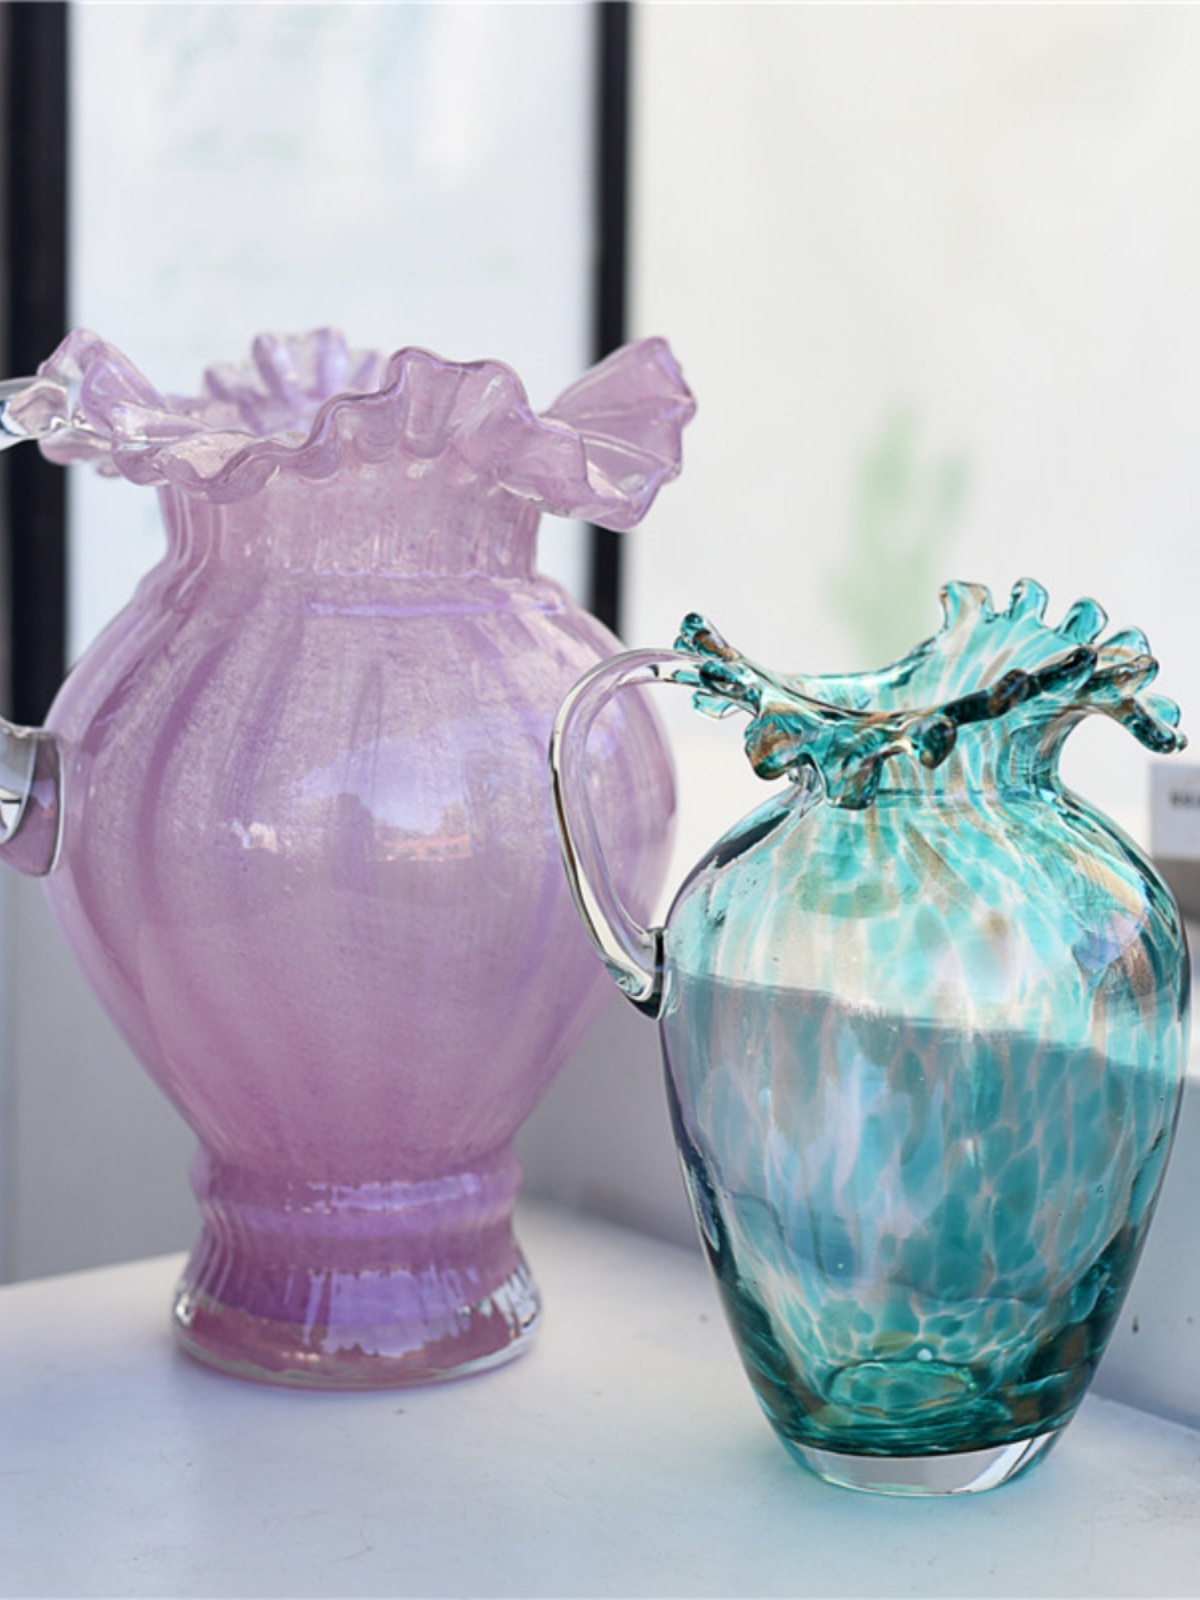 时尚创意简约现代彩色玻璃花瓶水培花器家居装饰桌面摆件乔迁礼品